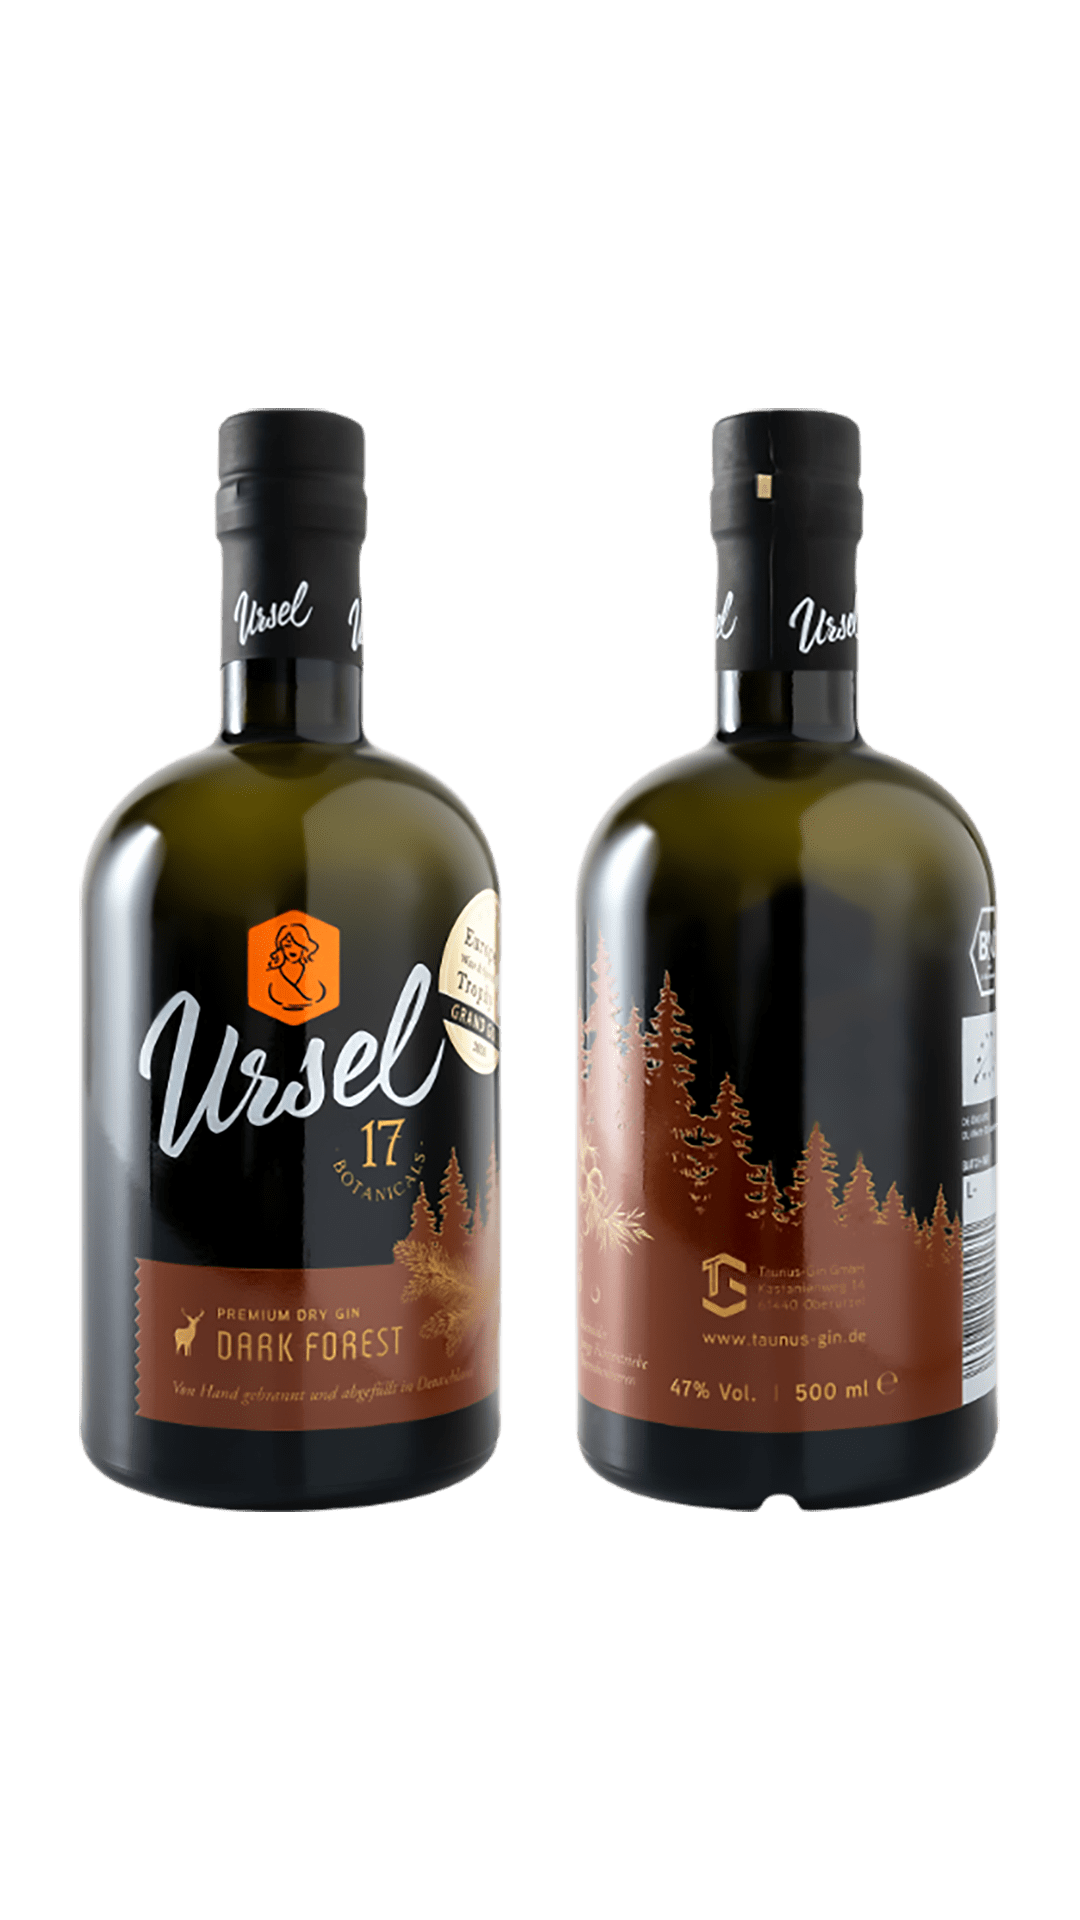 Ursel Taunus Dry Gin Dark Forest - Goldmädchen-Shop